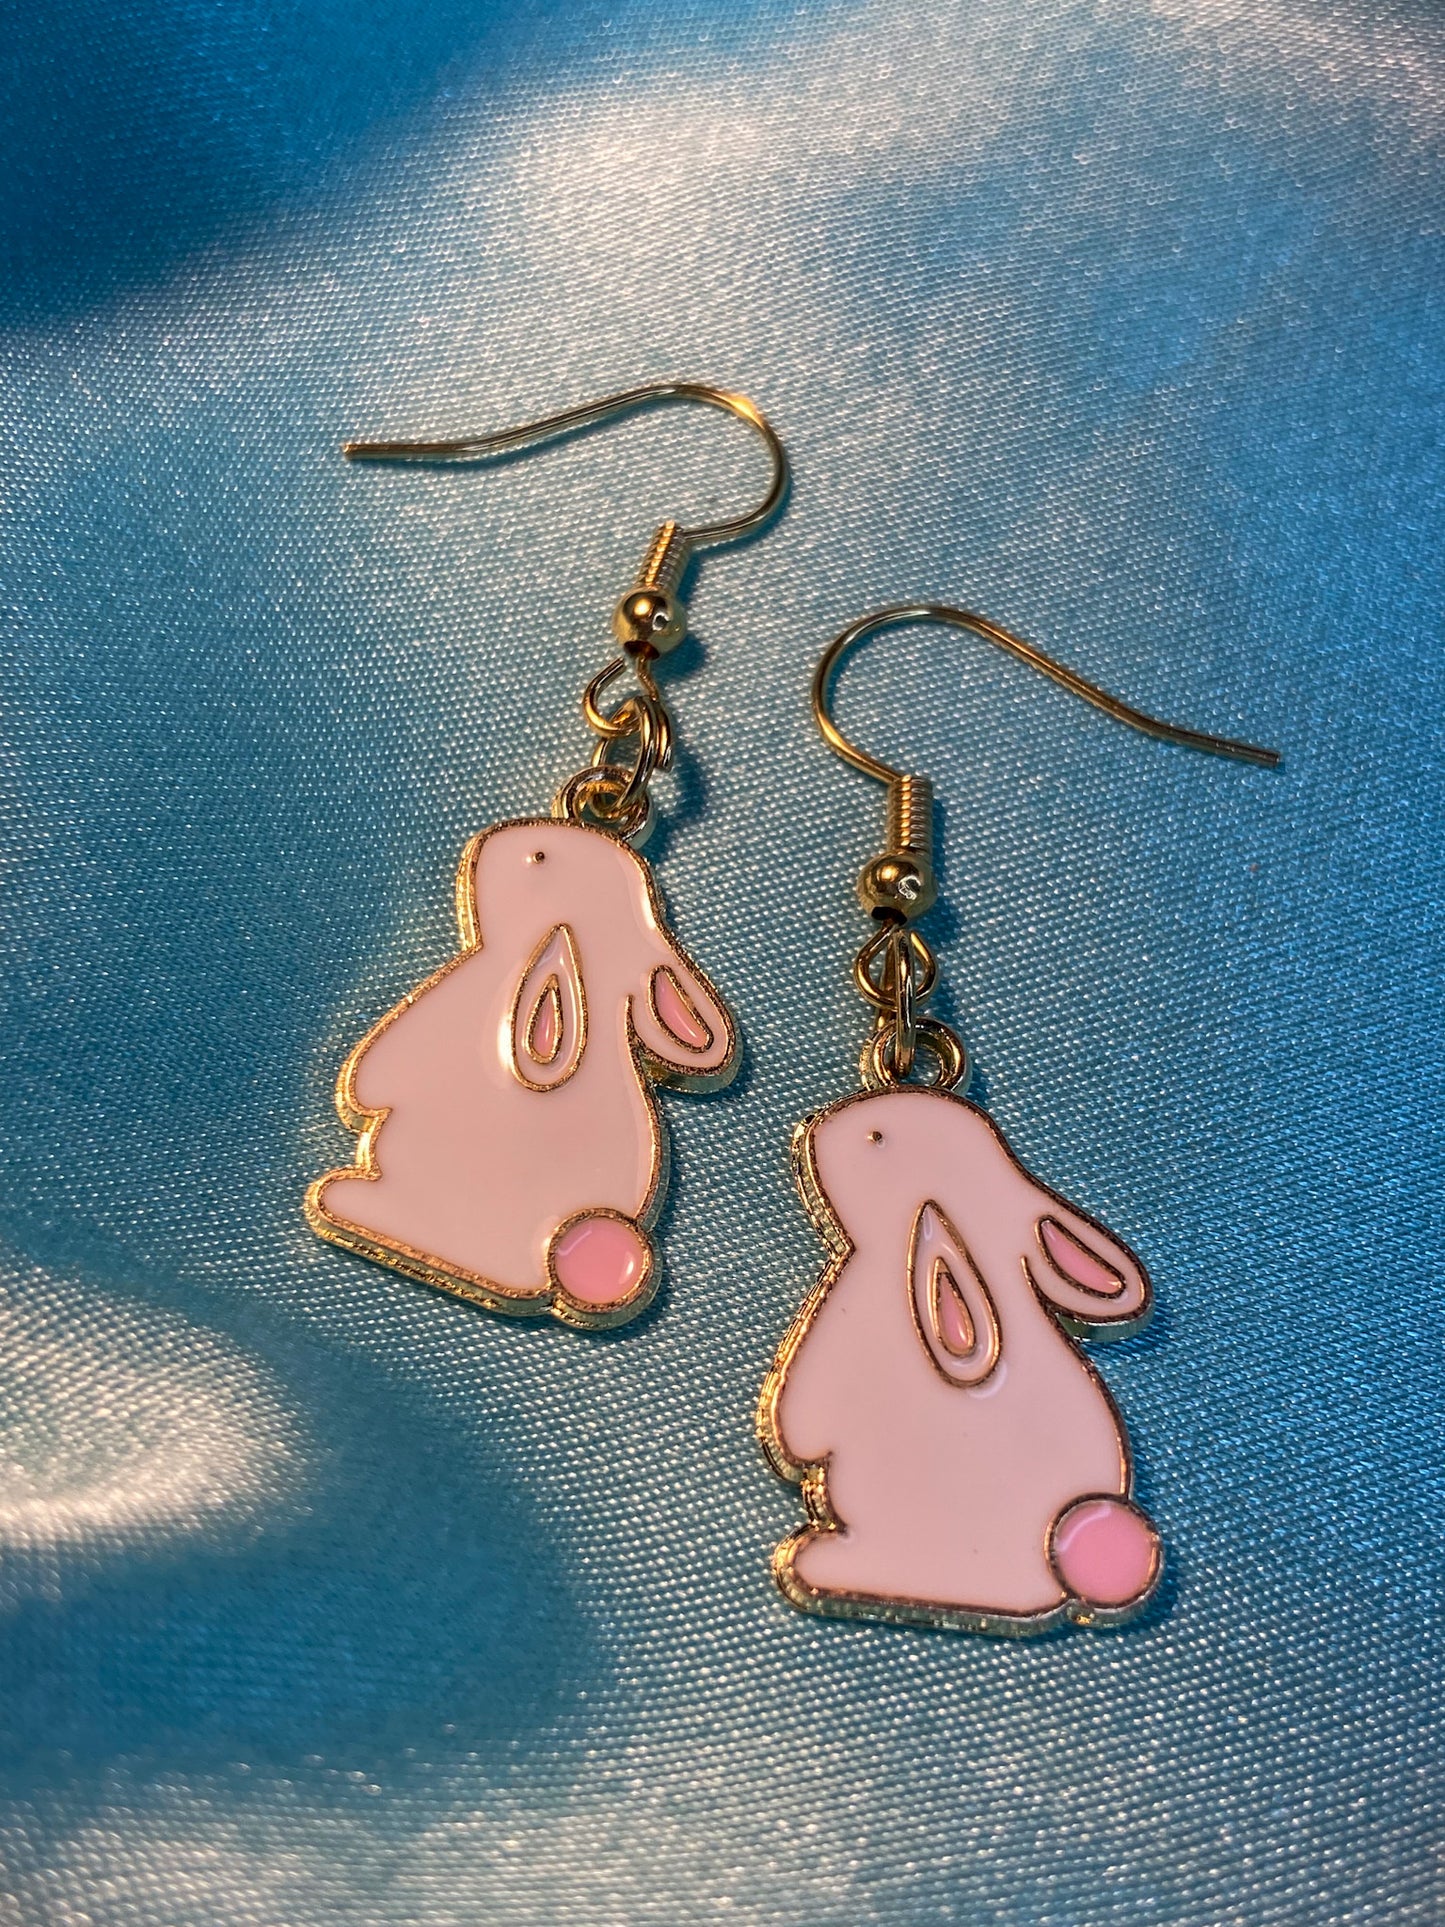 Handmade Cute Little White Bunny Earrings | Easter gift for her